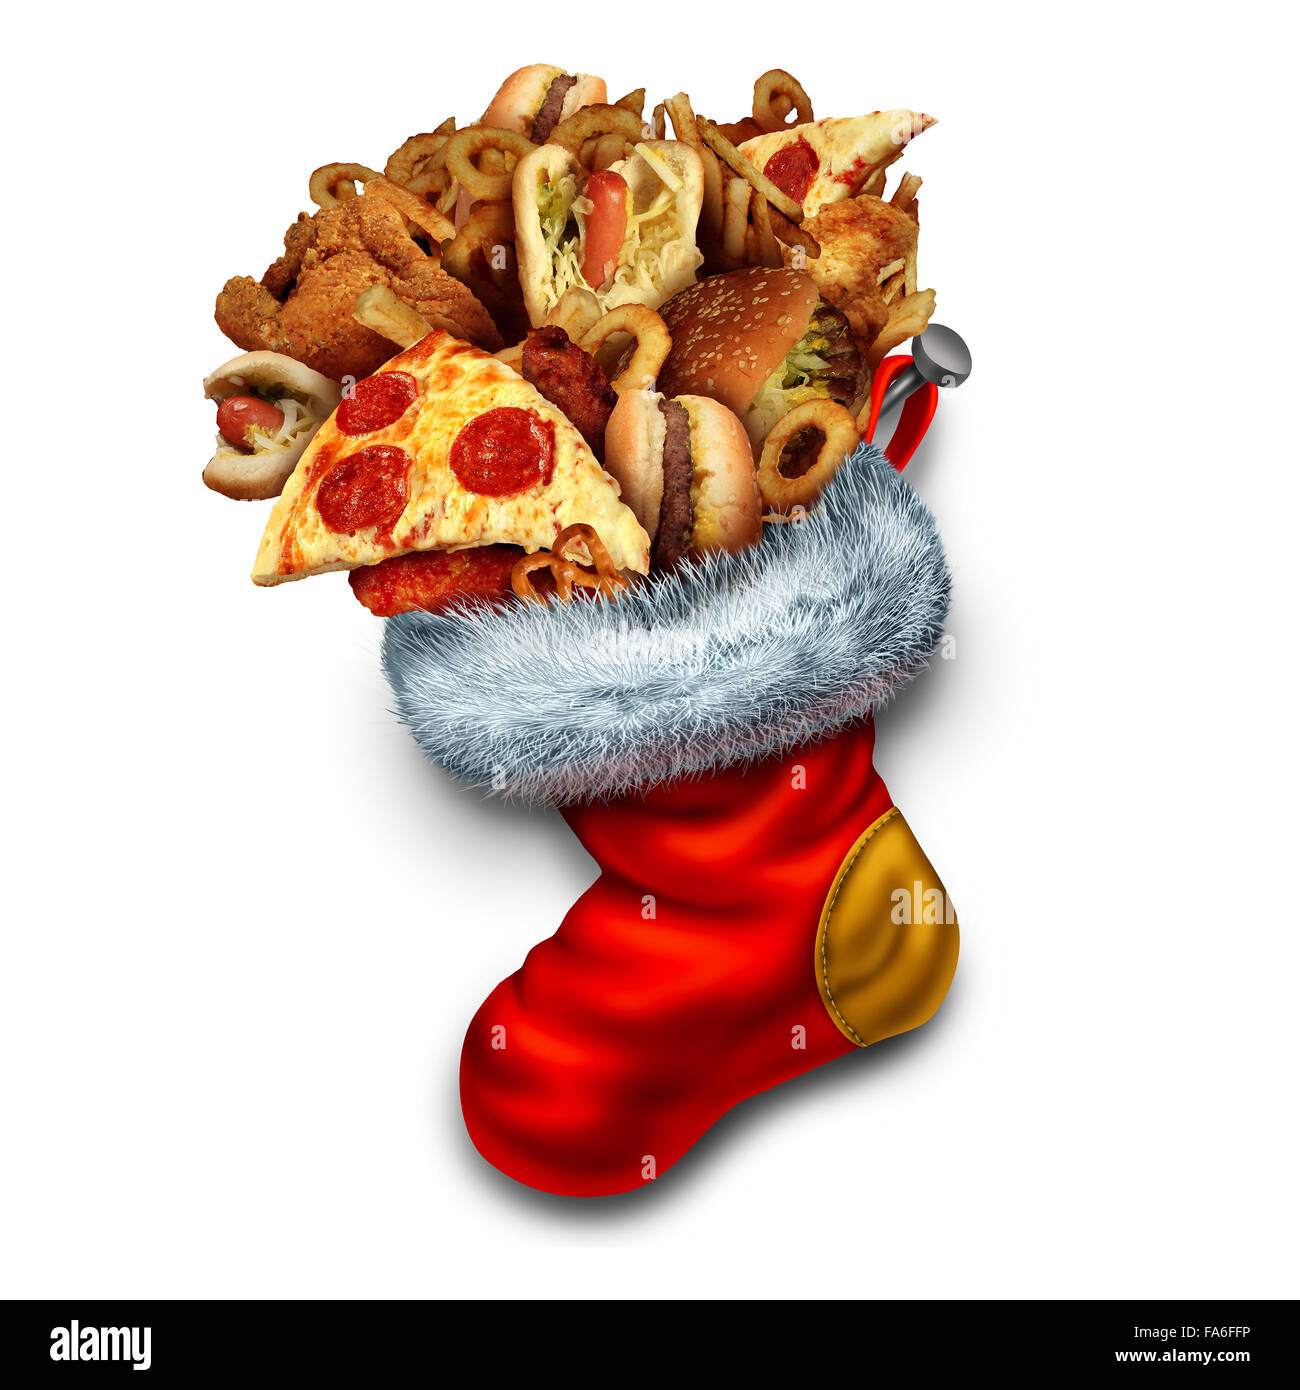 Vacances de manger malsain comme symbole d'un groupe de fast-food graisseux comme des hot-dogs et hamburgers poulet frit farcies dans un bas de Noël rouge comme une icône pour l'obésité et la suralimentation pendant les vacances d'hiver. Banque D'Images